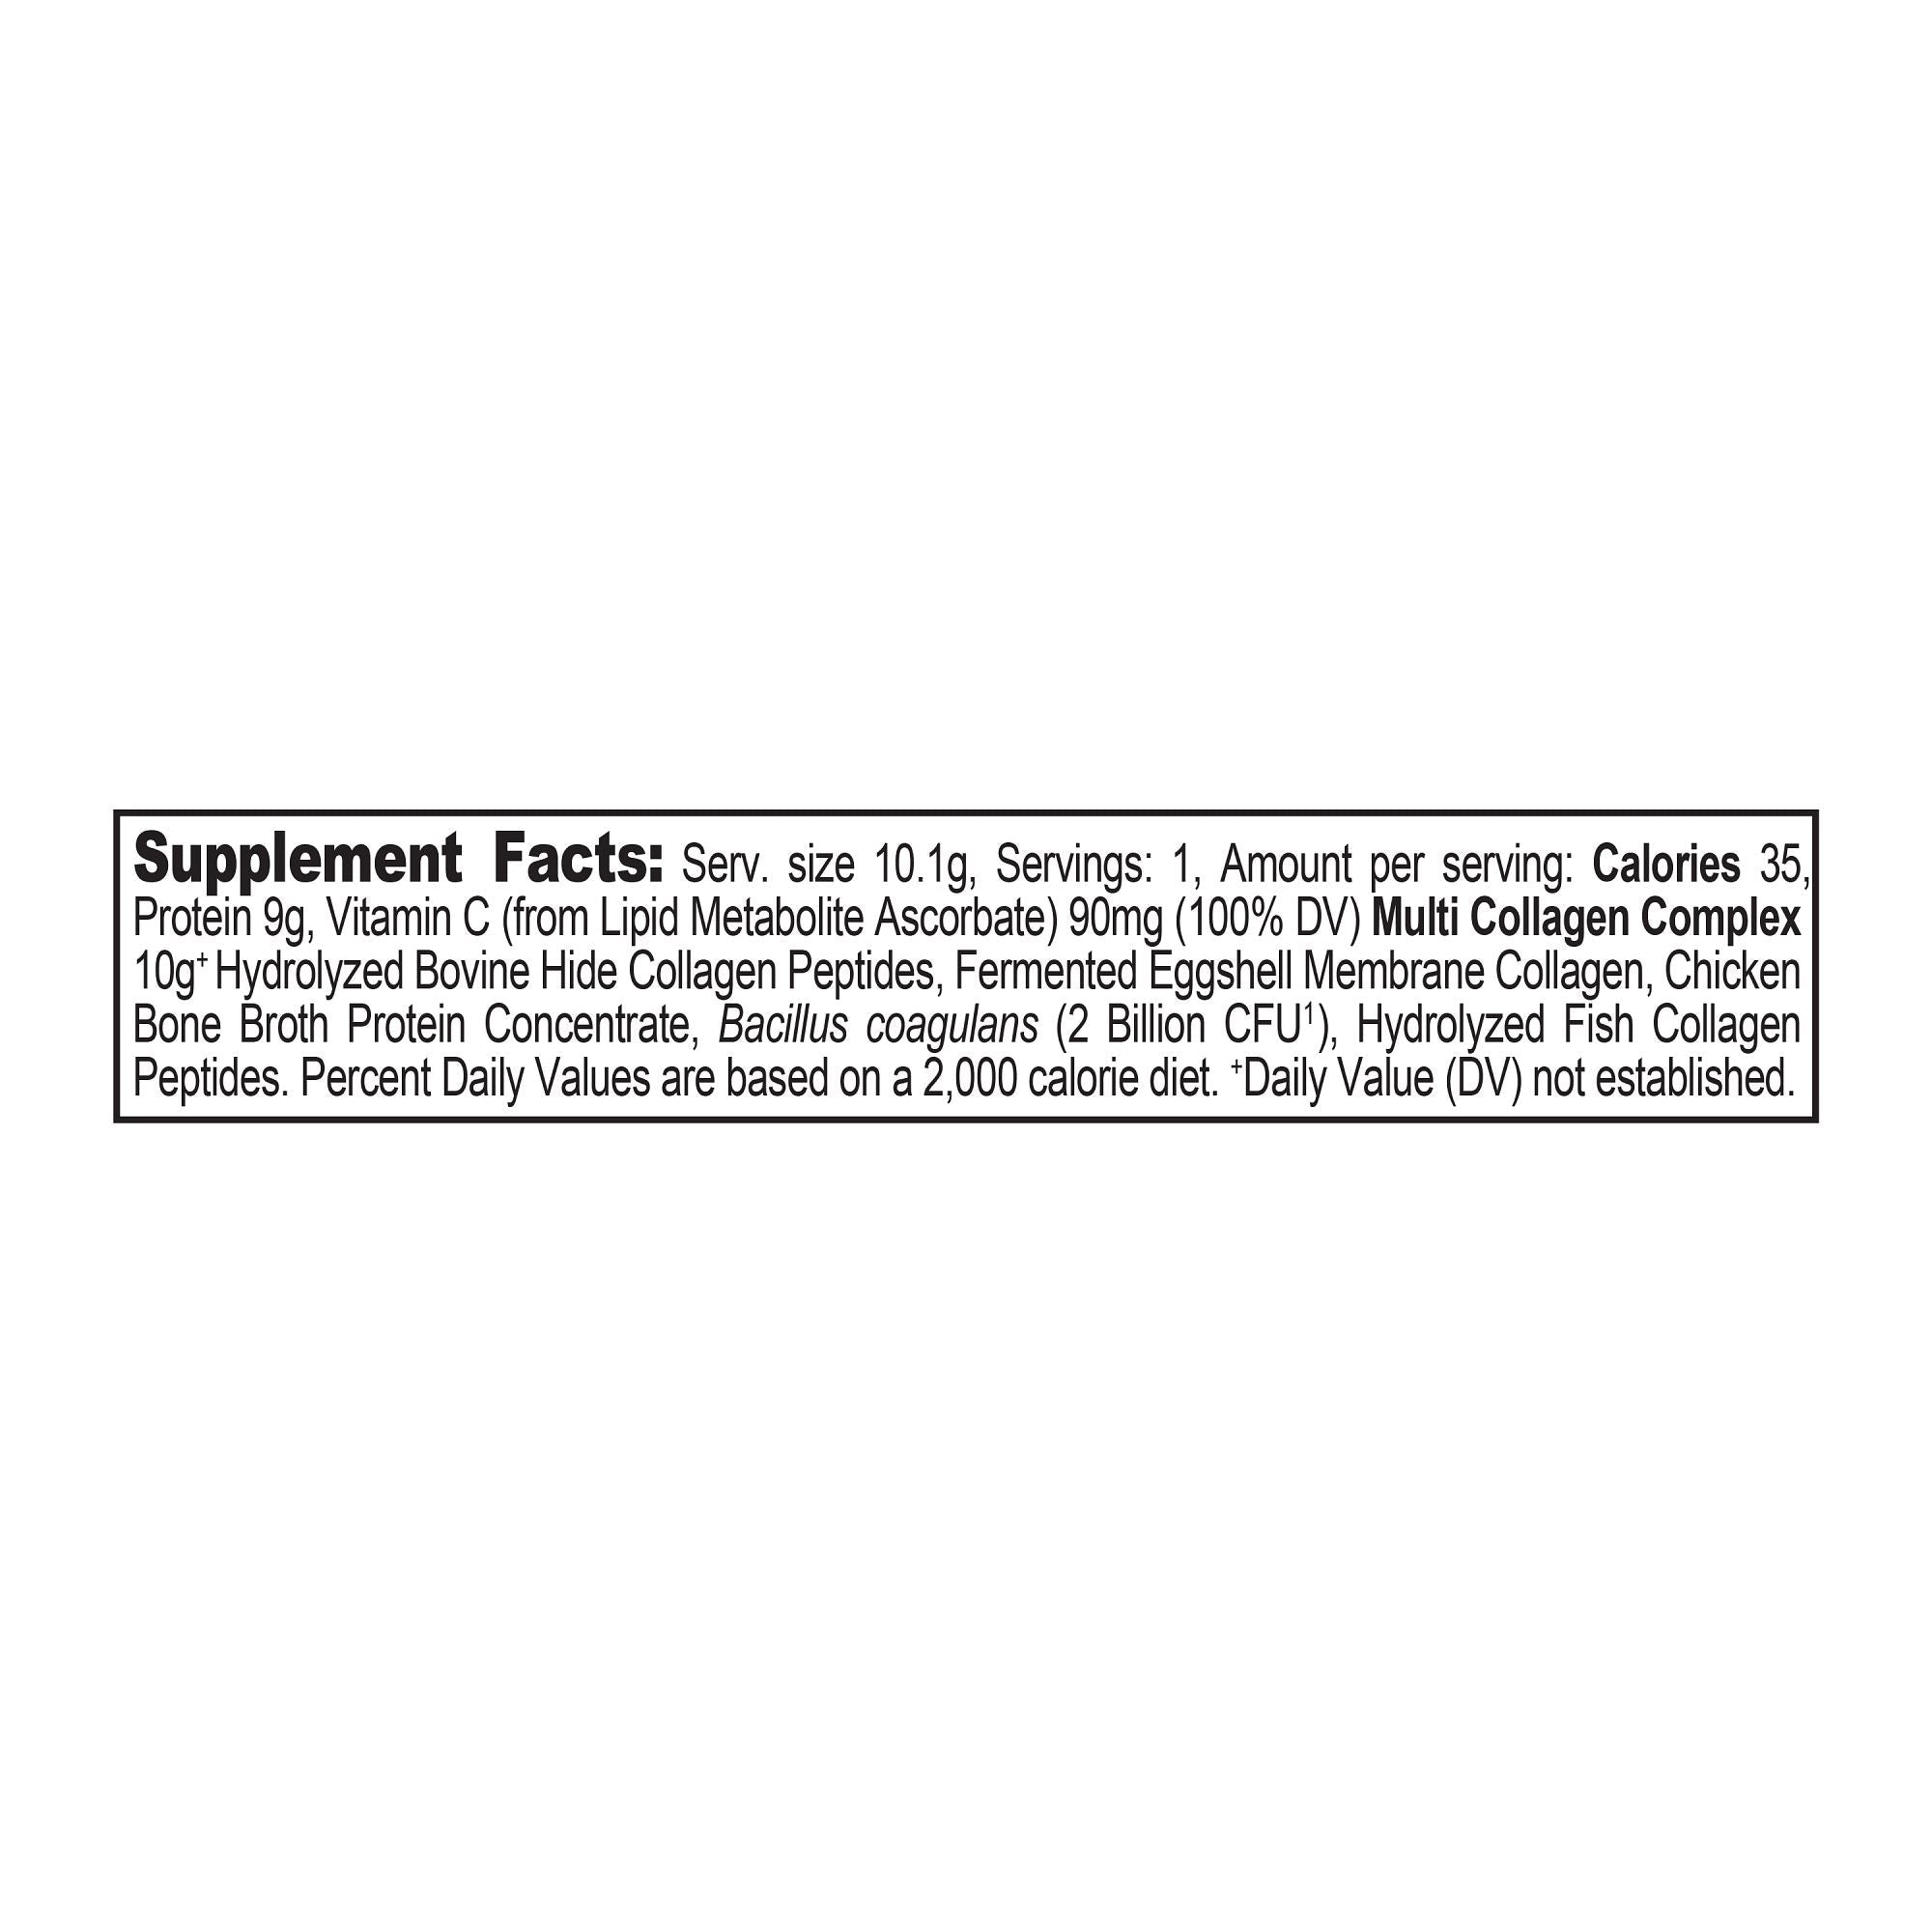 muti collagen protein stick packs supplement label